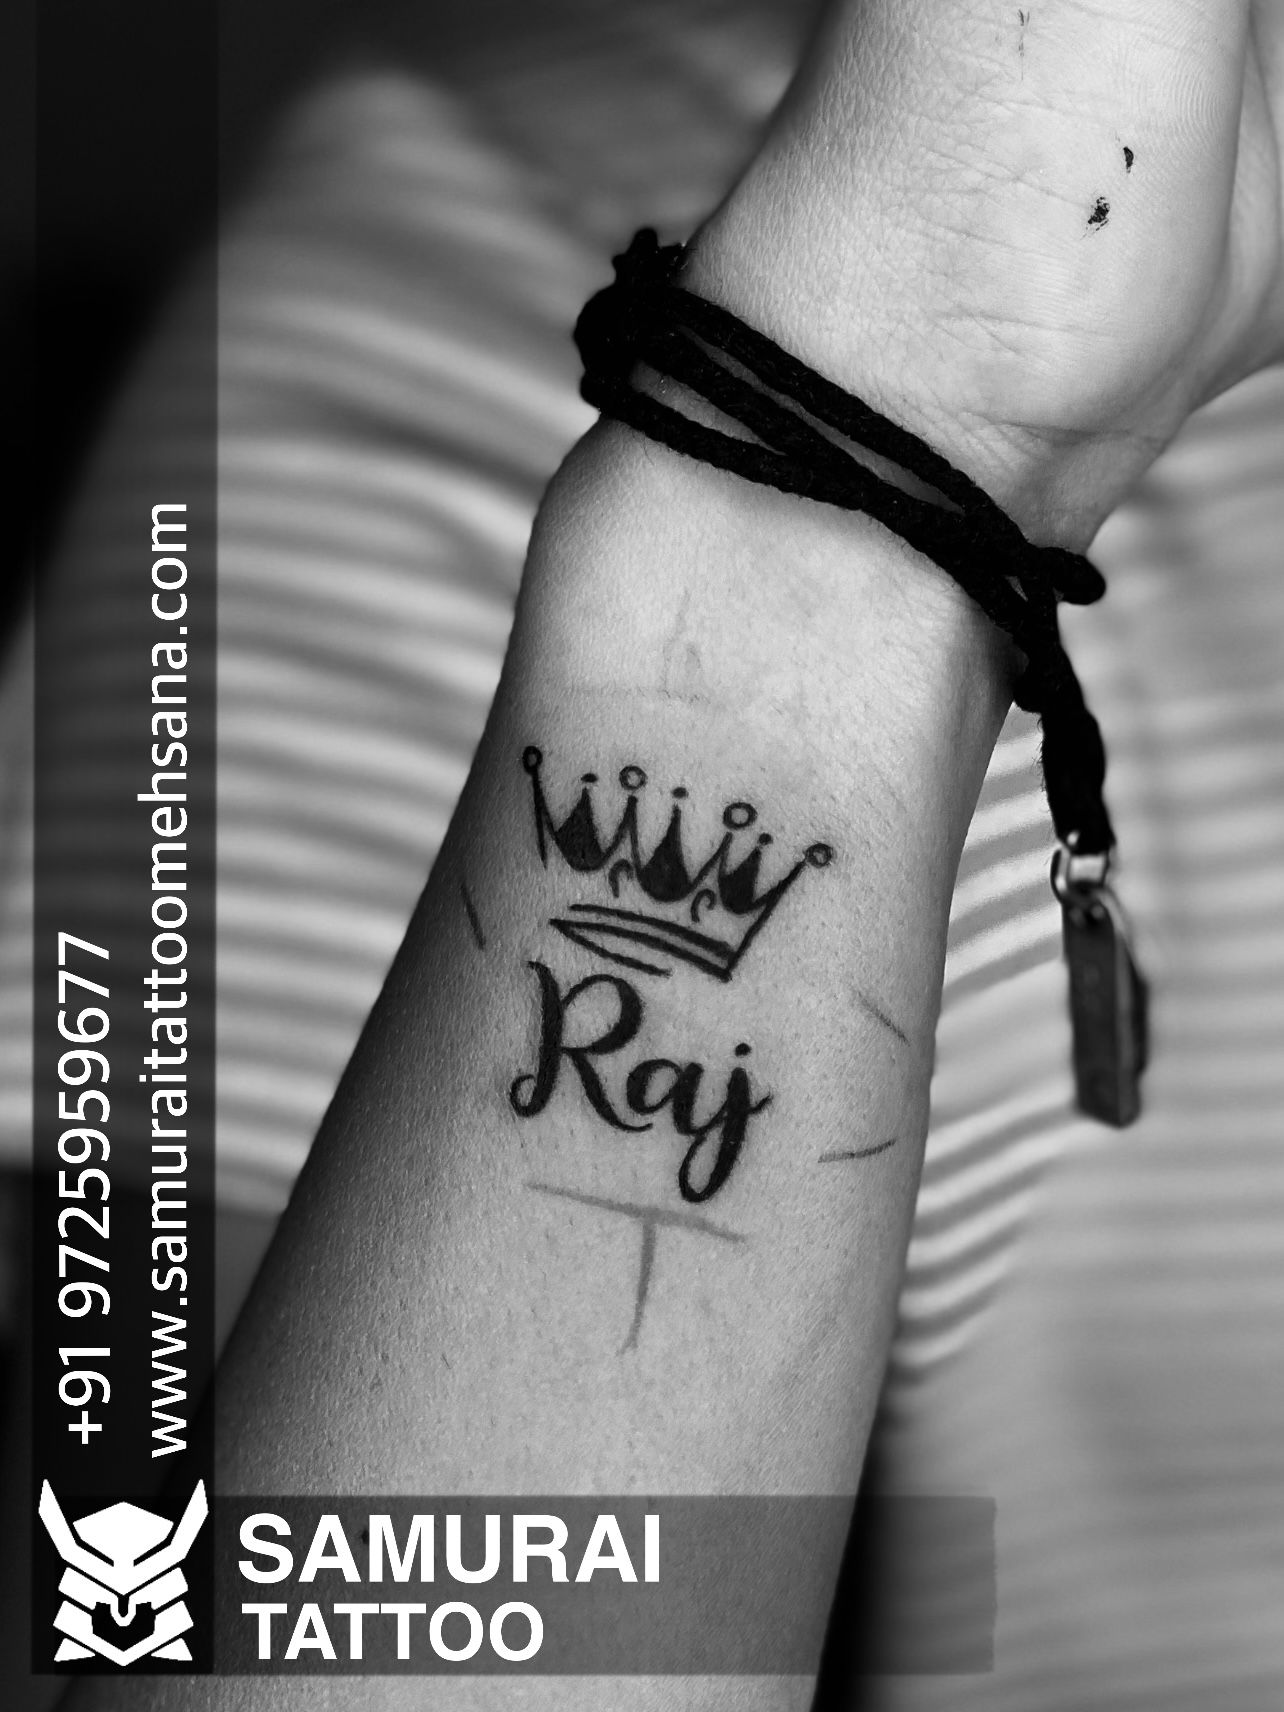 Raj tattoo art - Raj tattoo art added a new photo.